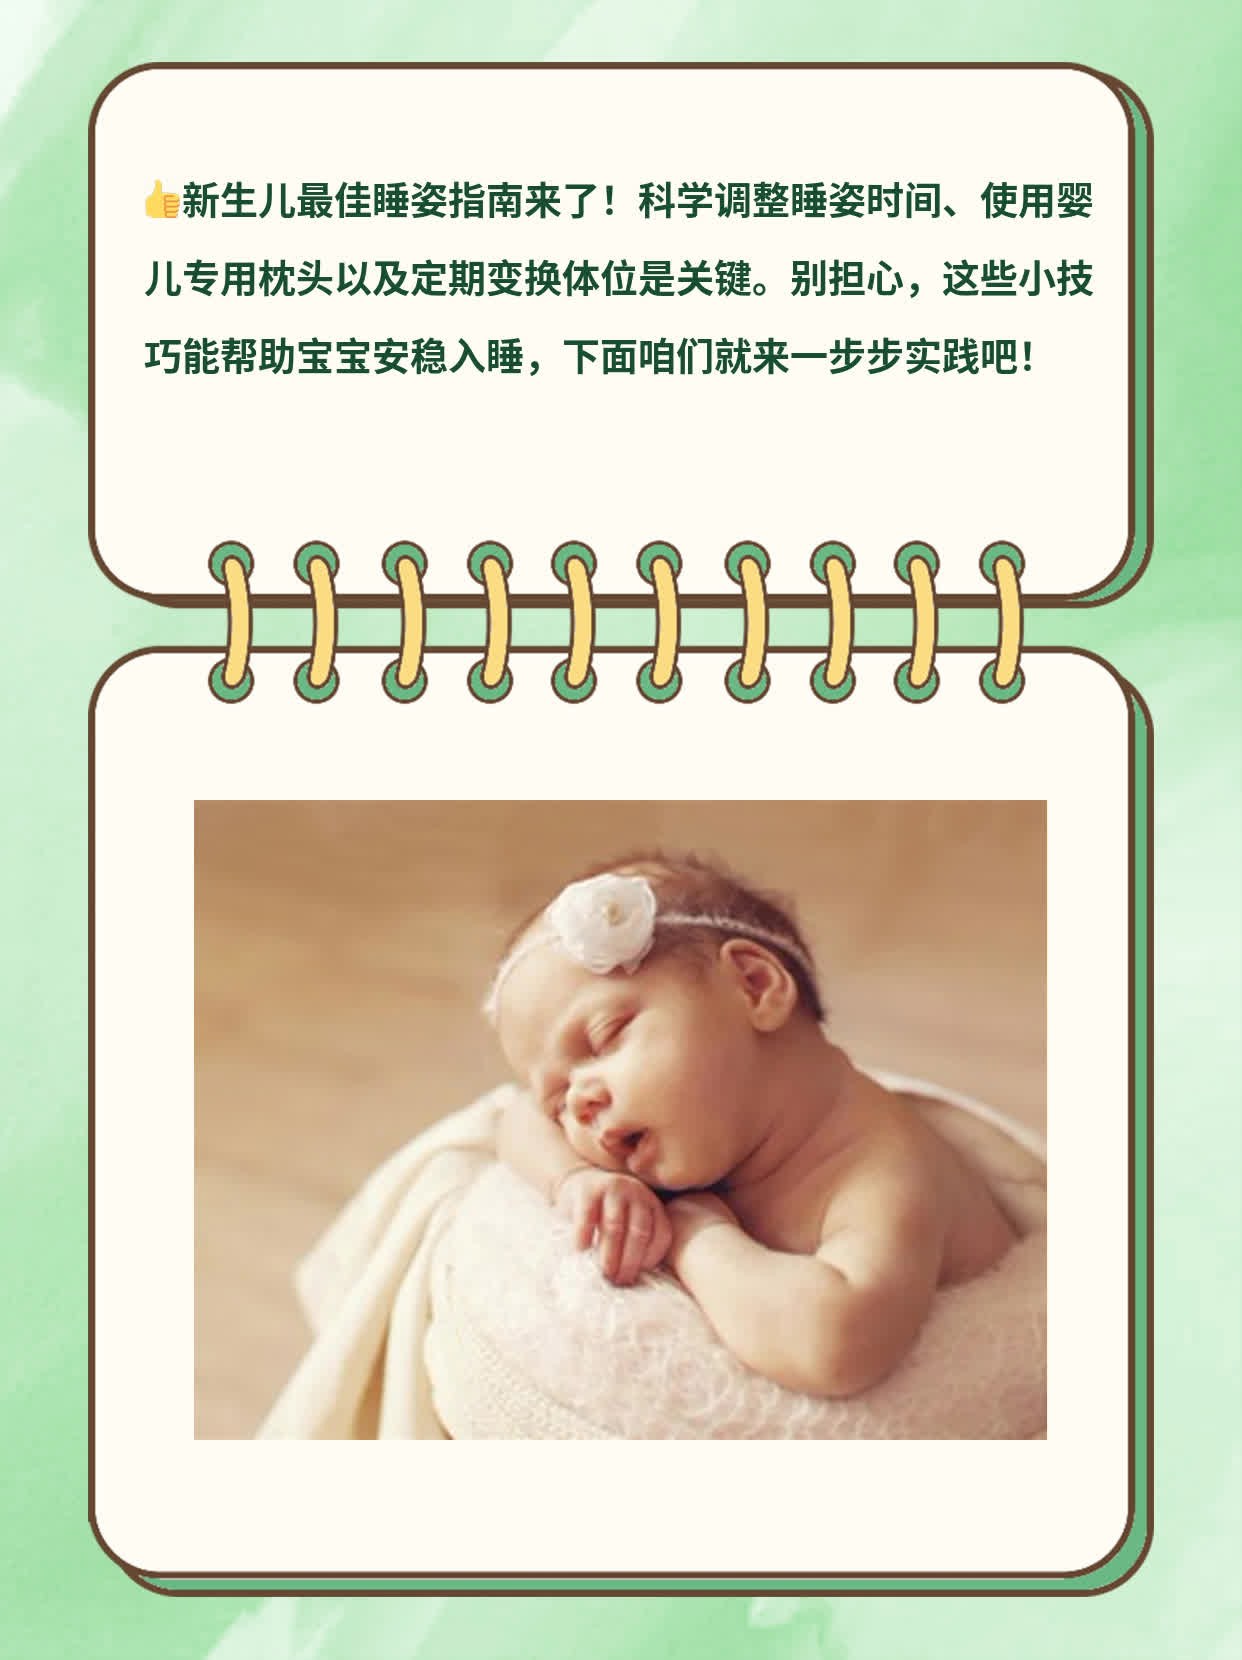 「新生儿睡姿」：宝宝最佳睡眠姿态指南